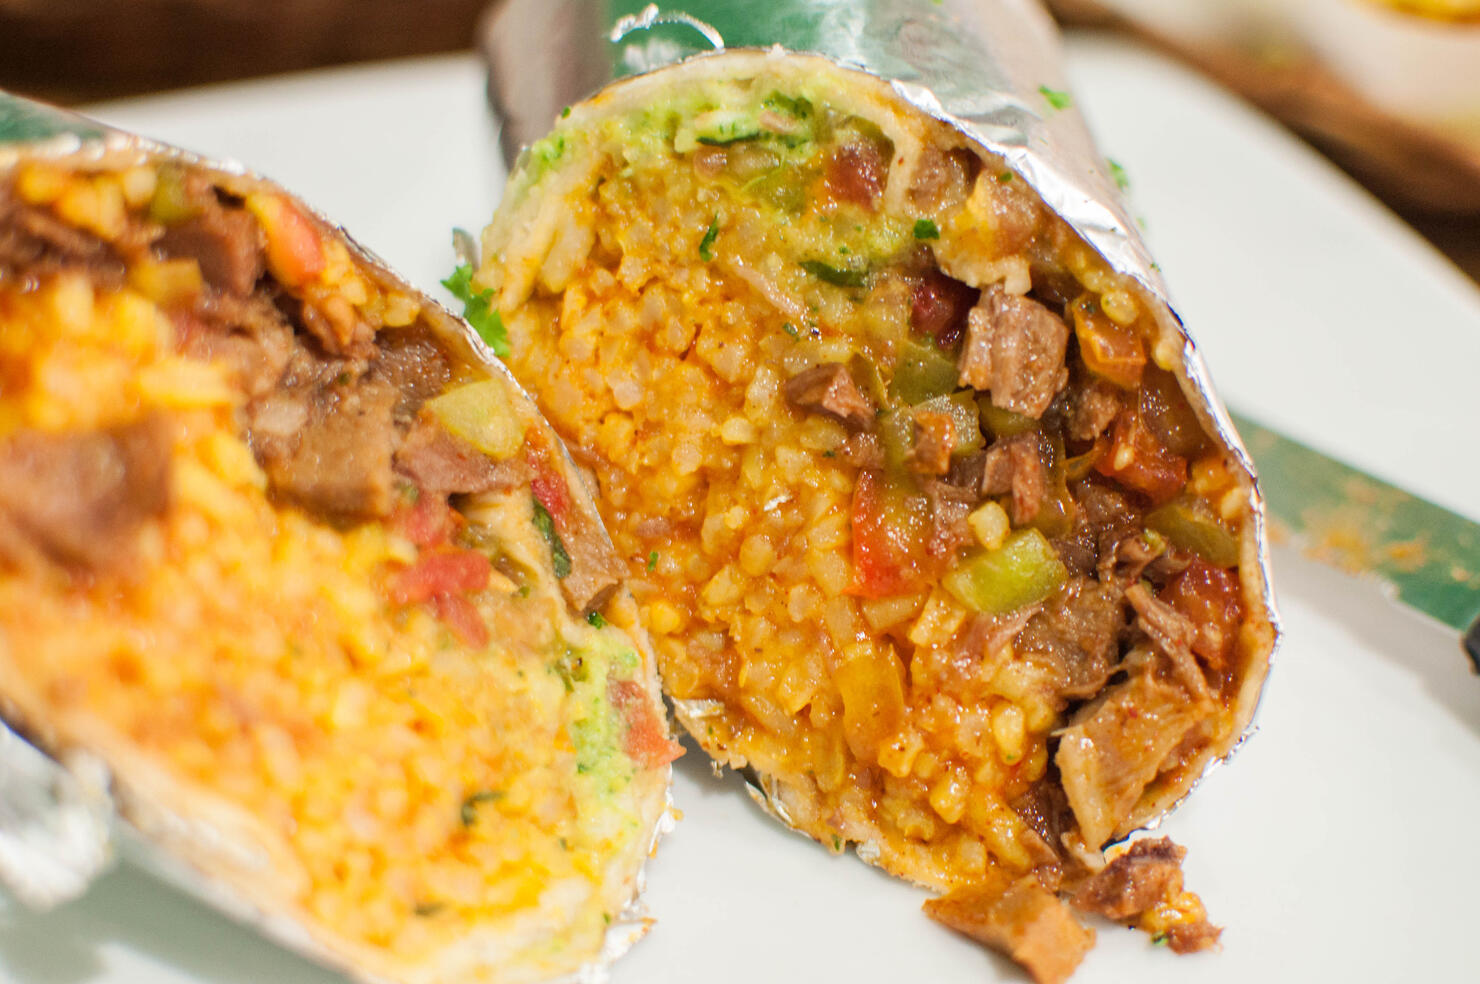 A close-up of a burrito